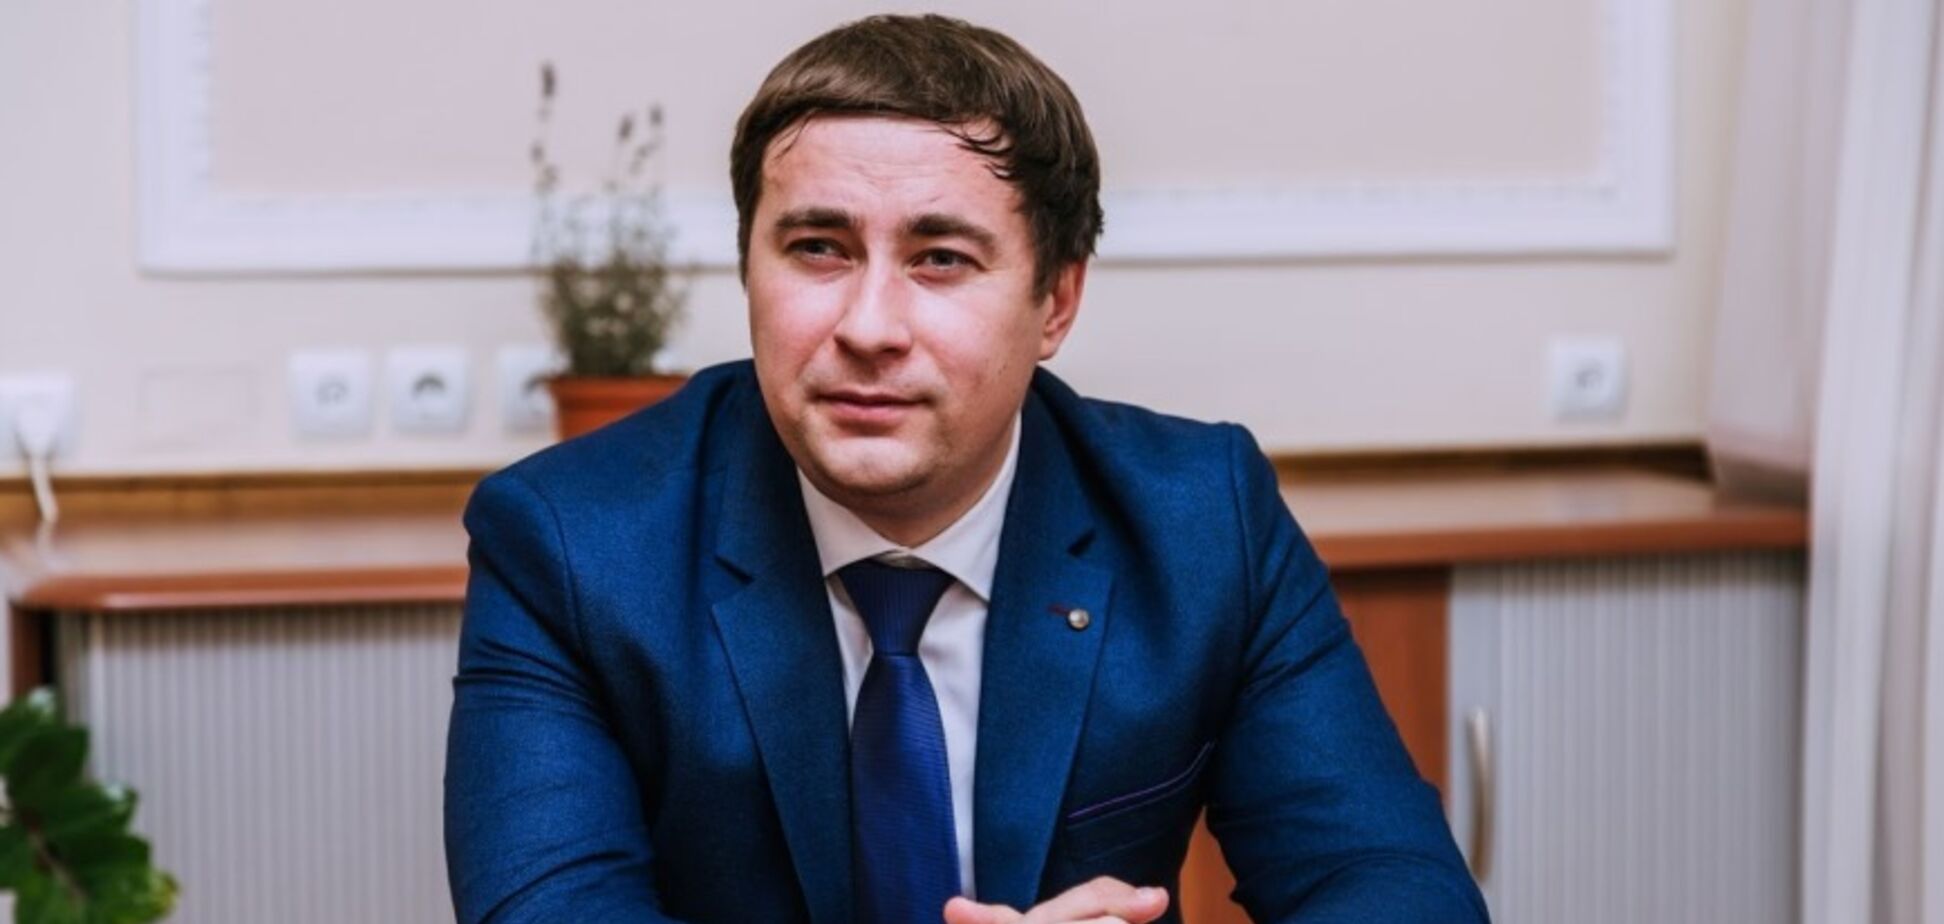 Госгеокадастр помогает бизнесу оформлять документы на землю, – Лещенко